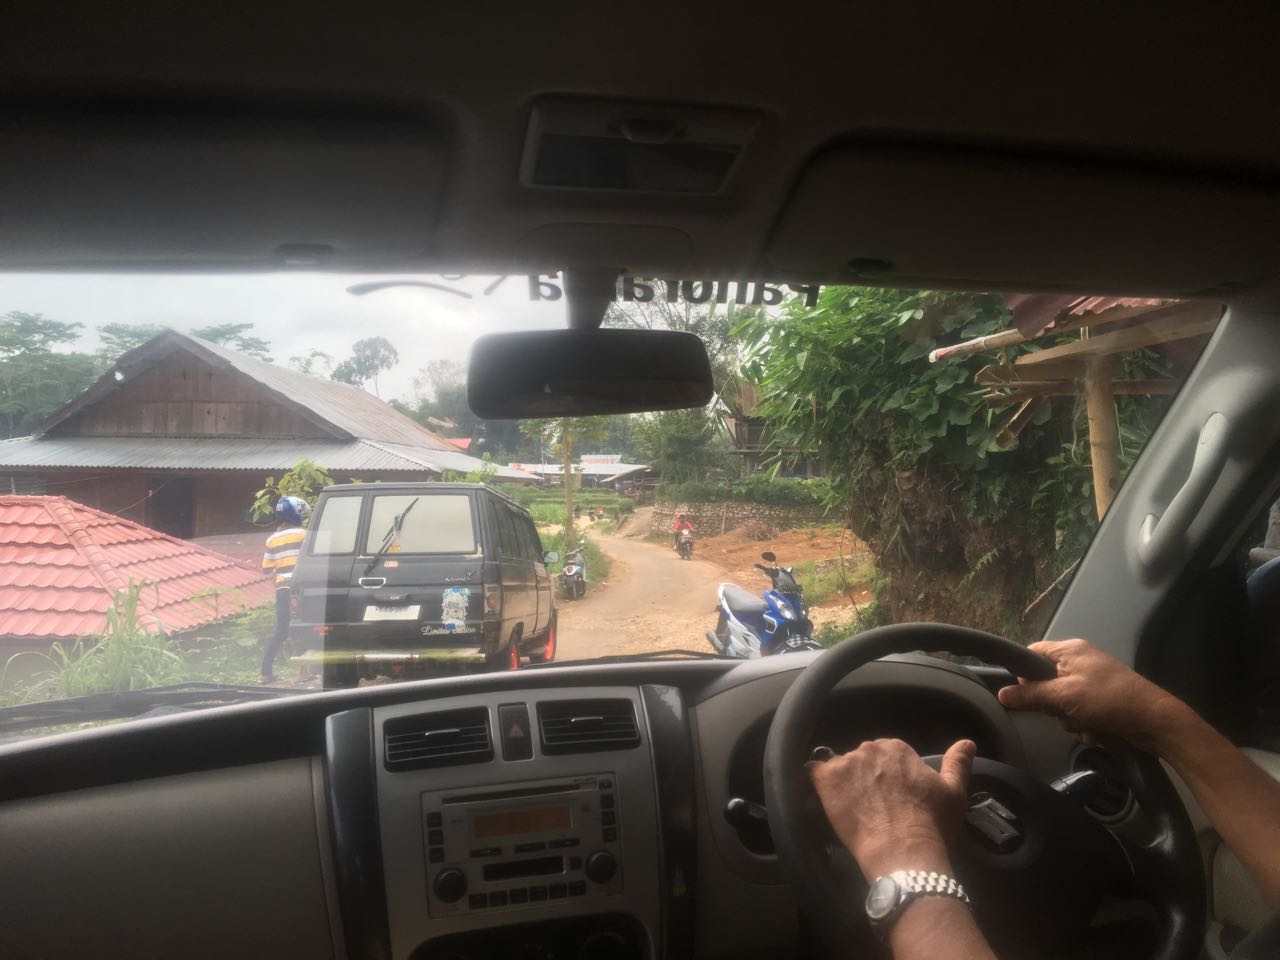 Klassische Handhaltung beim Autofahren in Indonesien